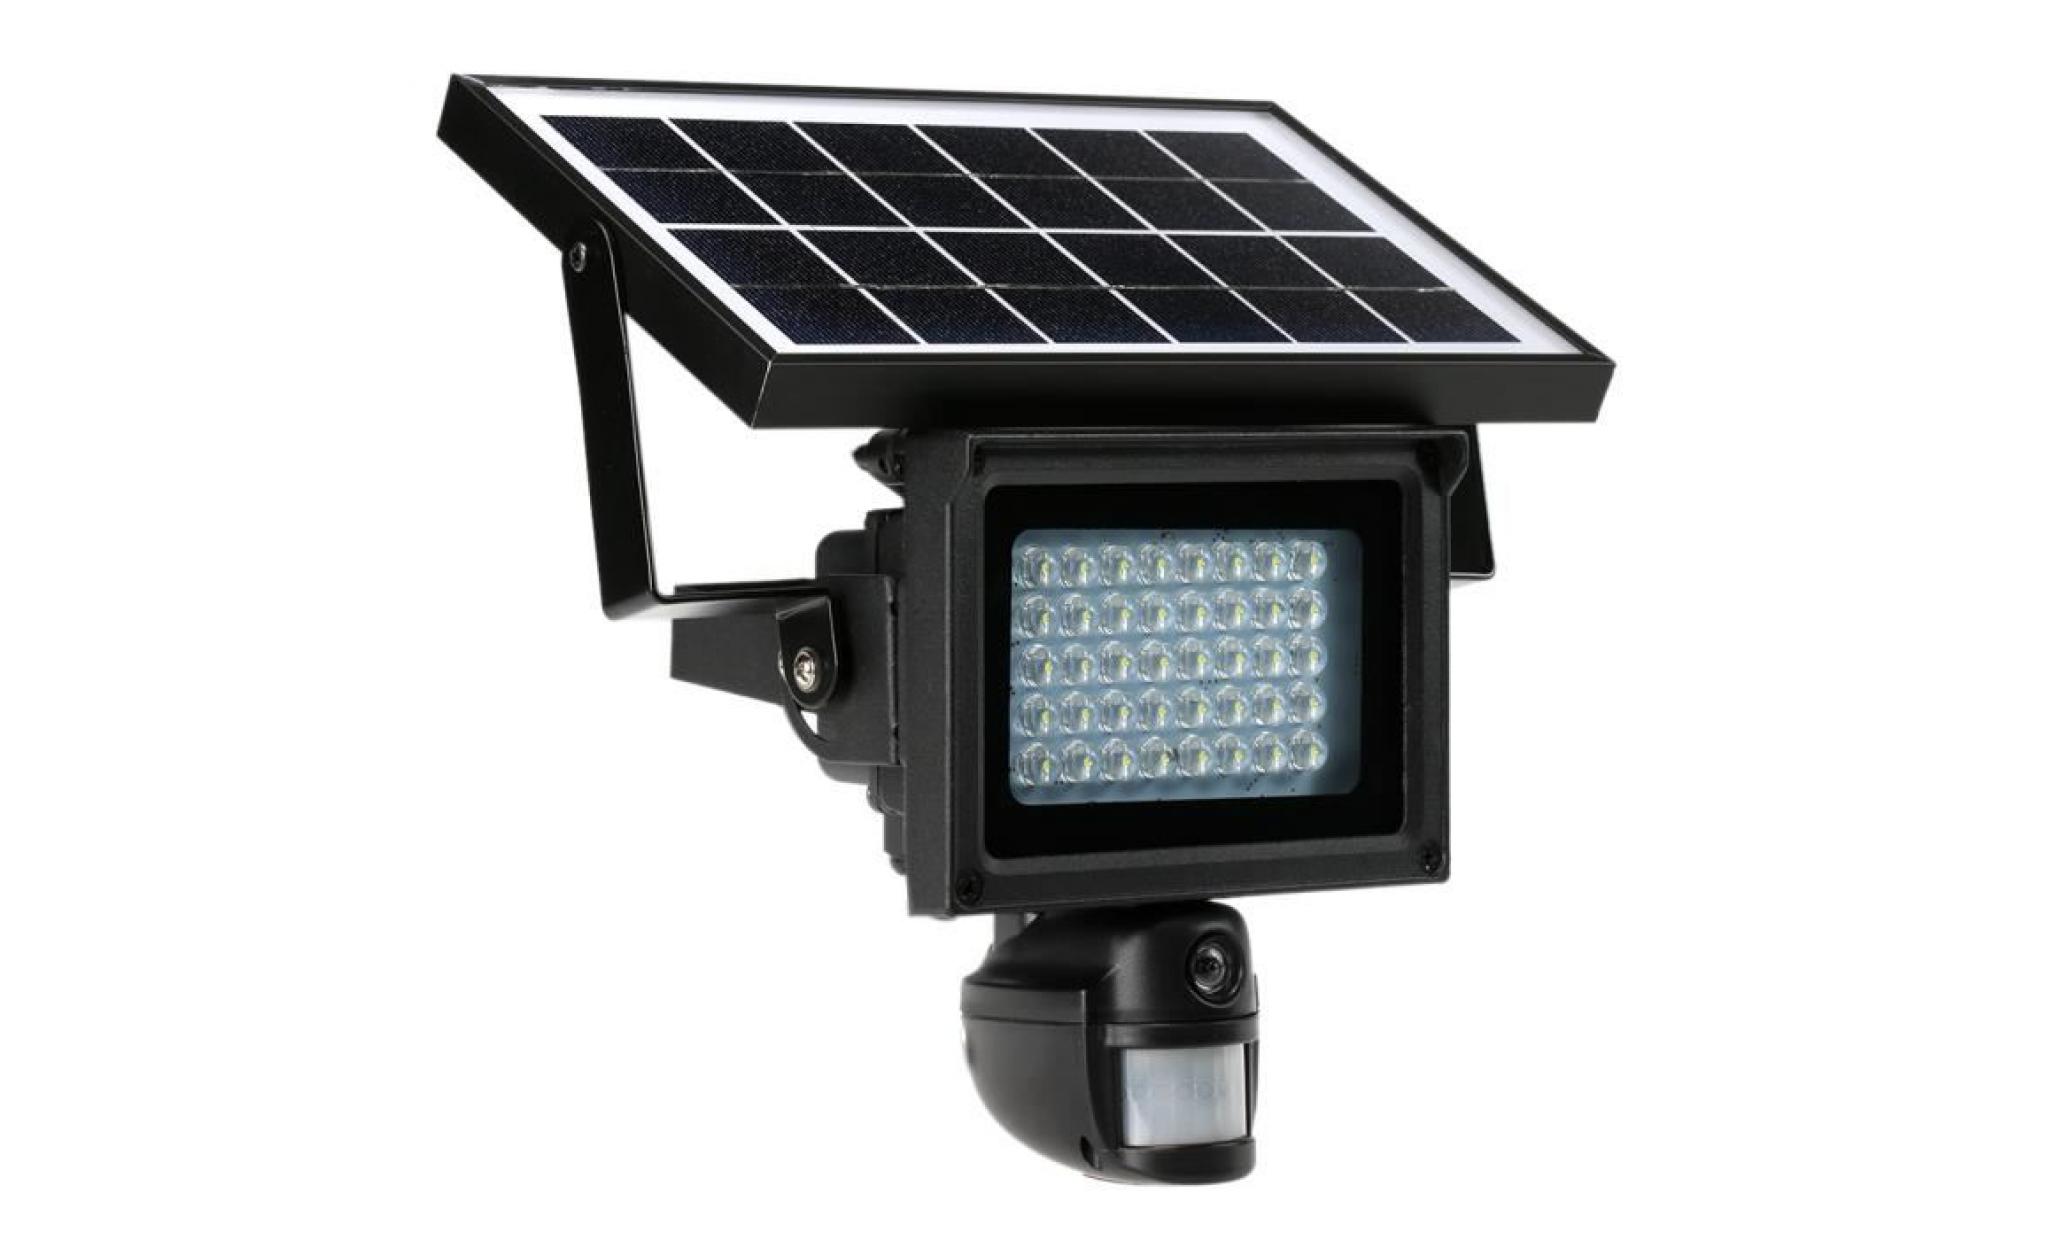 40 ir leds projecteur solaire lampe de rue 720p hd cctv caméra de sécurité enregistreur dvr détection de mouvement pir charge pas cher